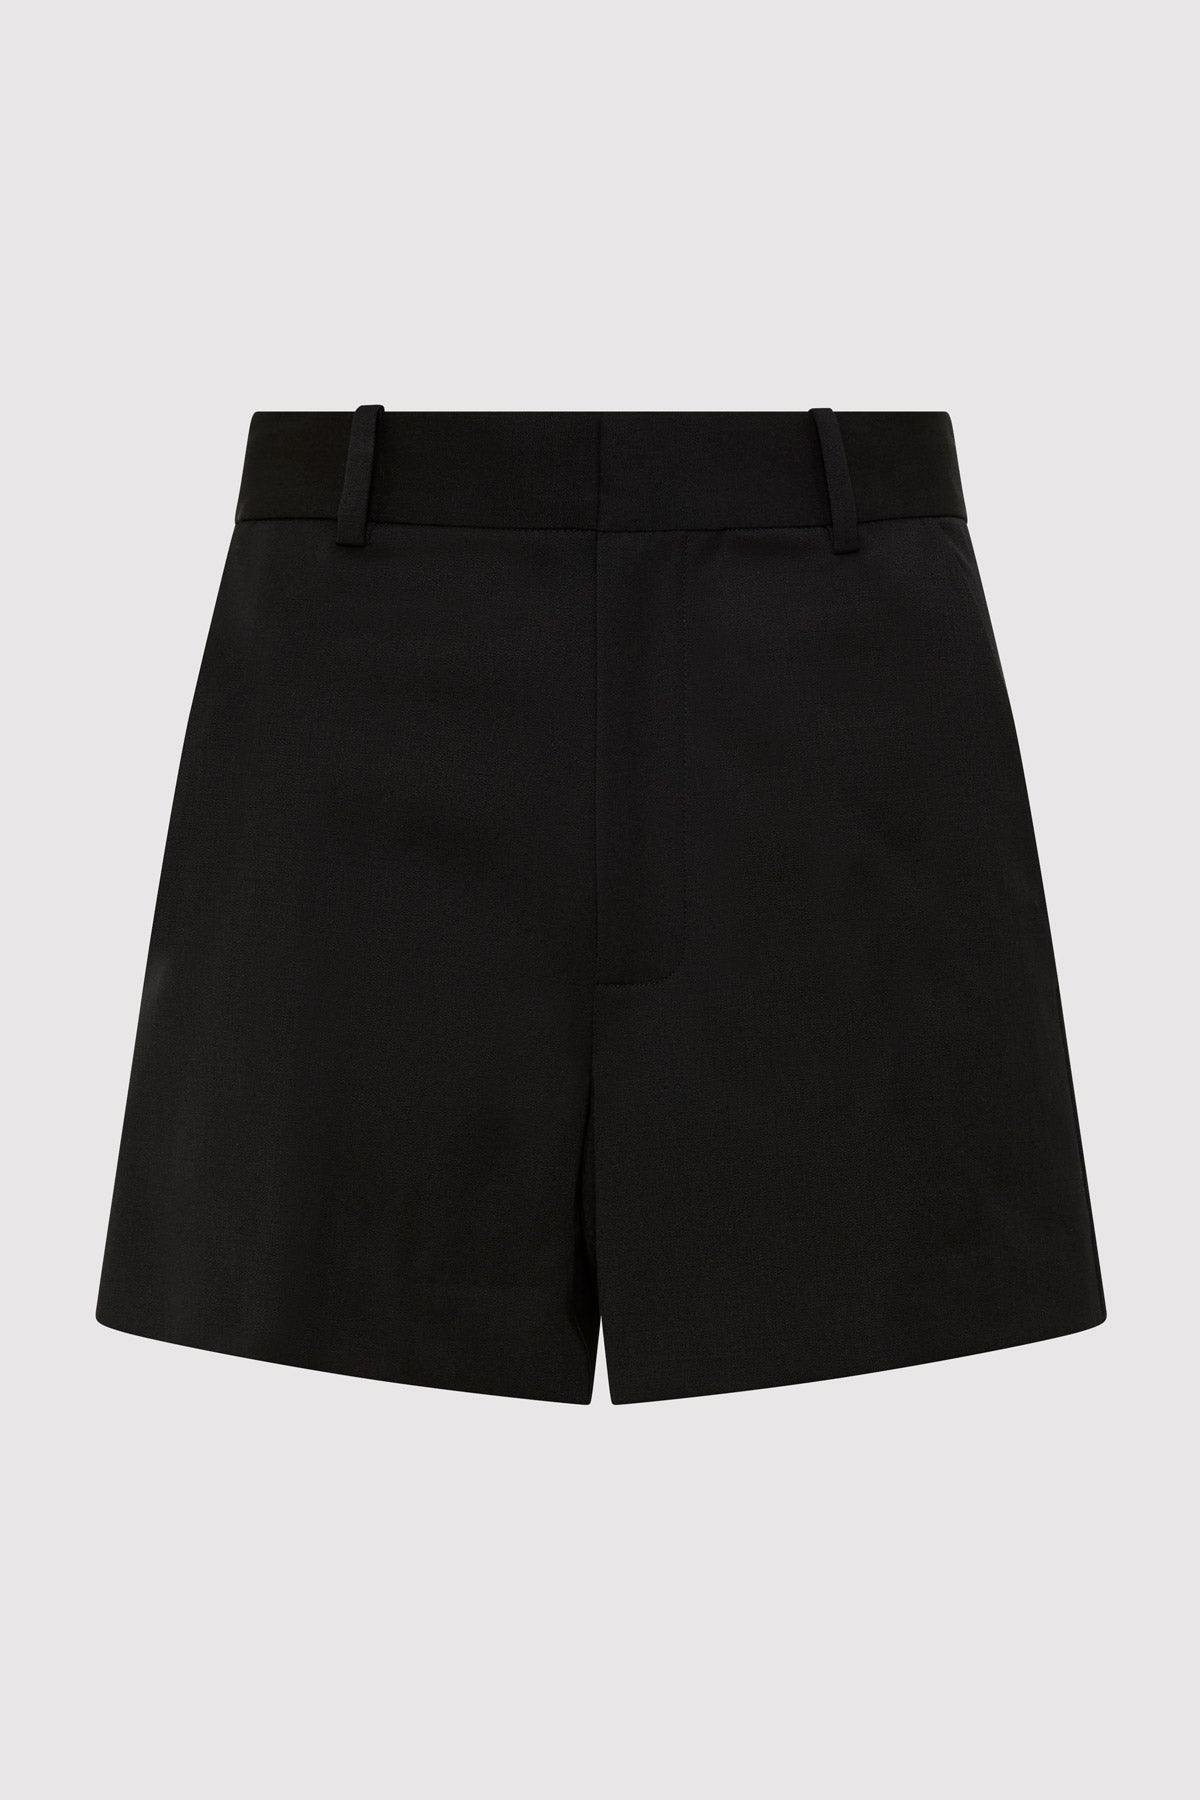 St. Agni | Tailored Shorts - Black